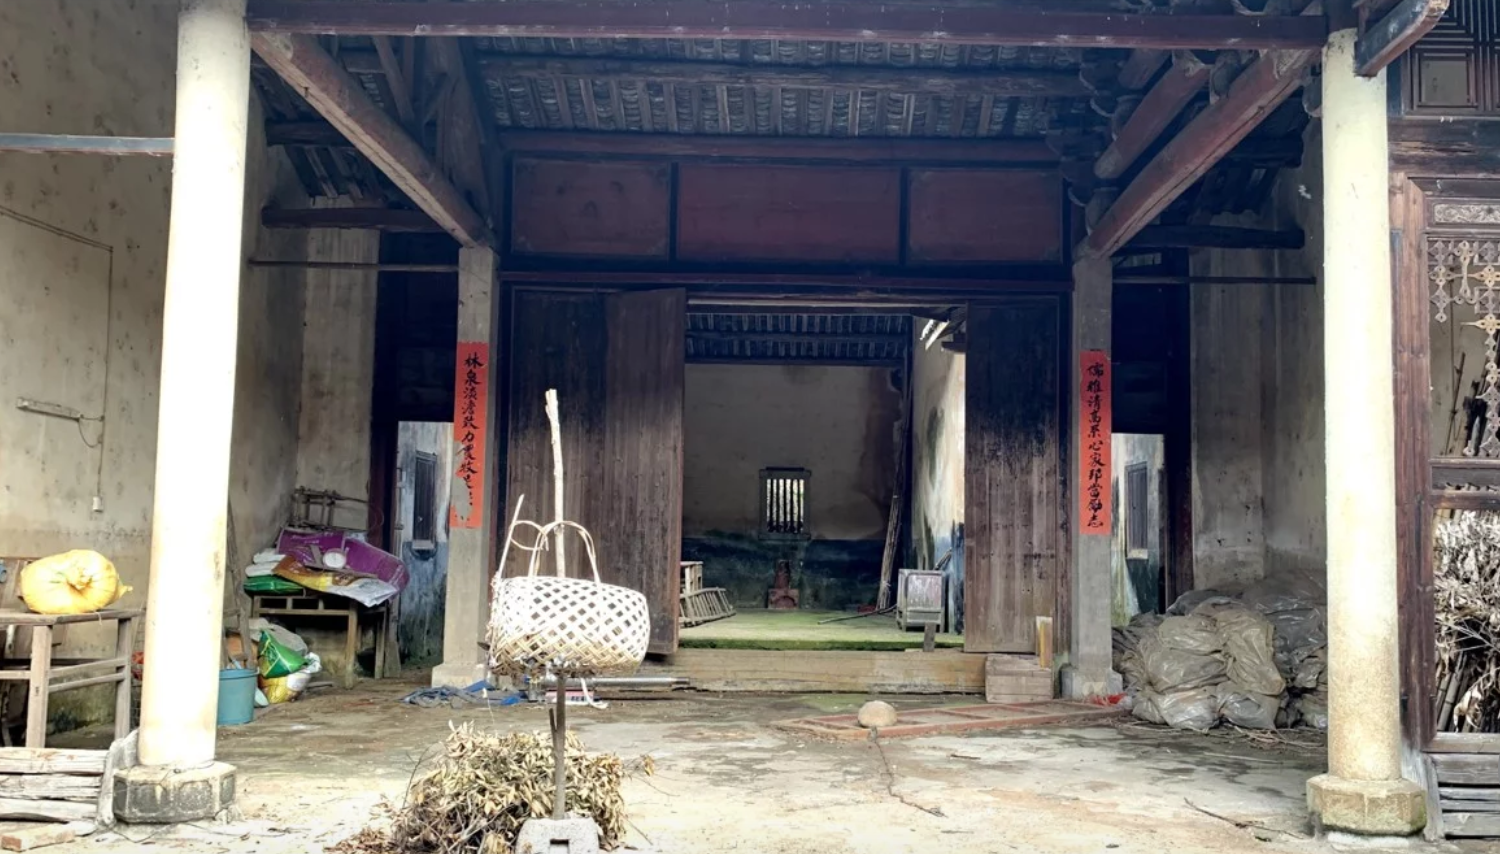 Ngôi nhà tồi tàn, nơi một người họ hàng xa của anh em nhà Thaksin vẫn sinh sống. Ảnh: SCMP